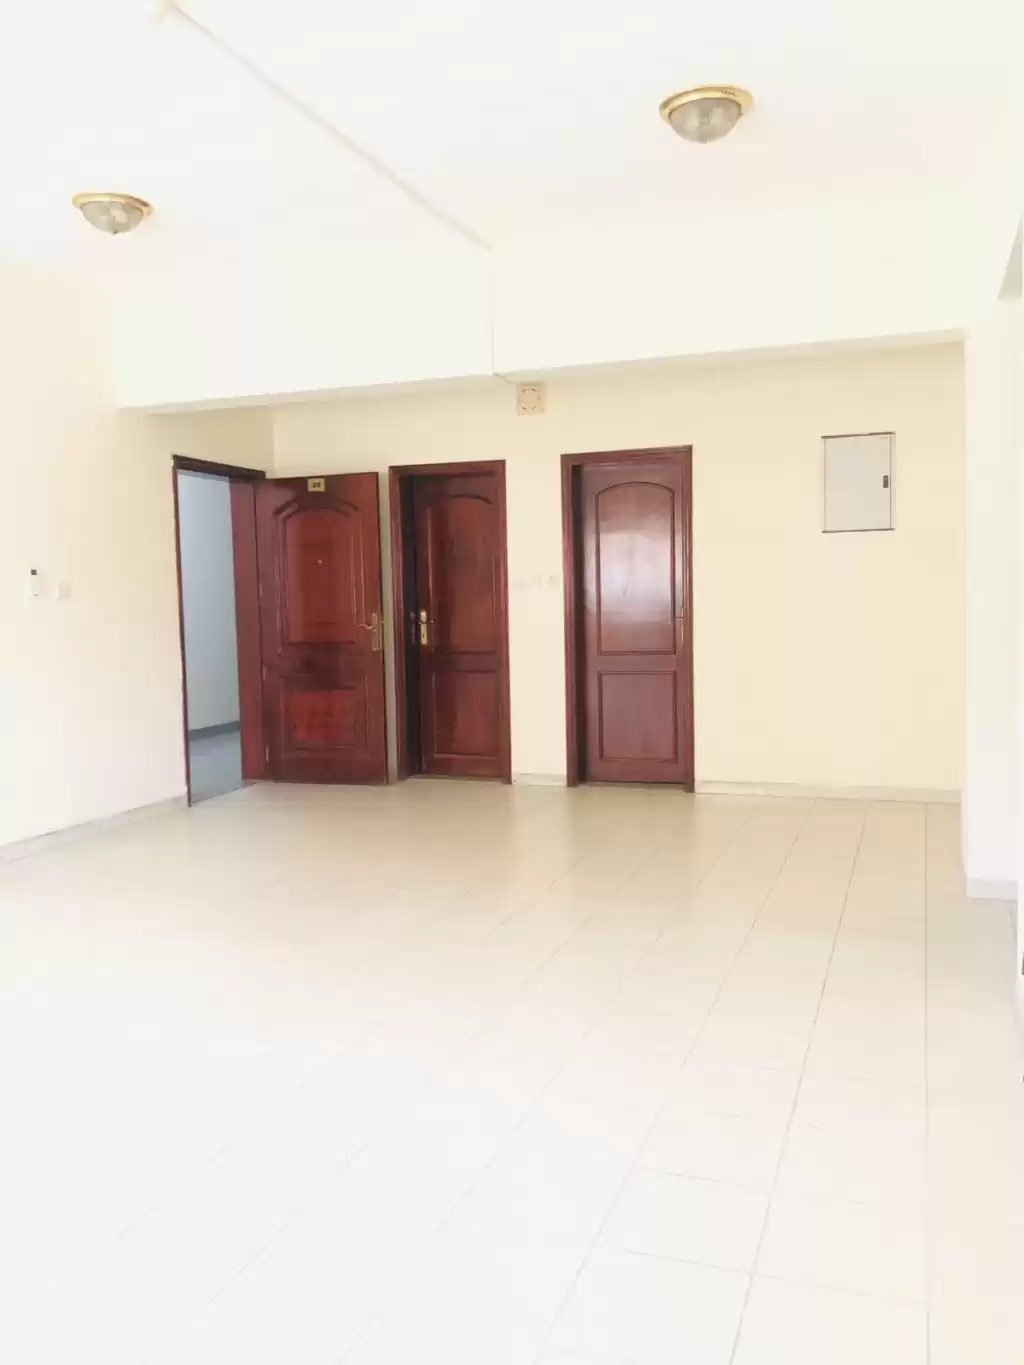 Résidentiel Propriété prête 2 chambres U / f Appartement  a louer au Al-Sadd , Doha #13908 - 1  image 